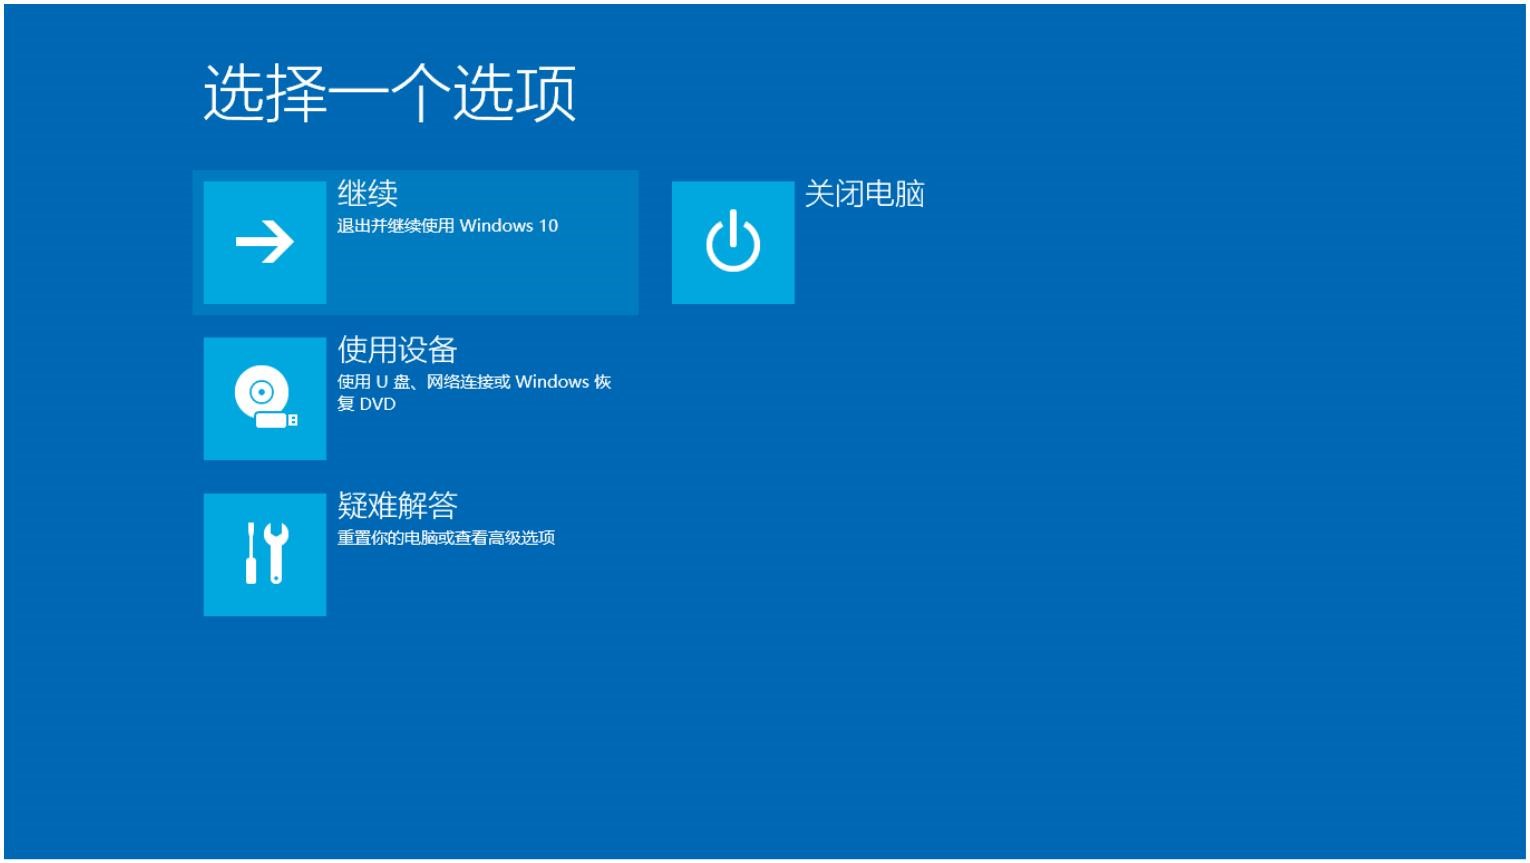 Windows10用户手册 - Windows 10 系统维护 - 通过系统镜像修复